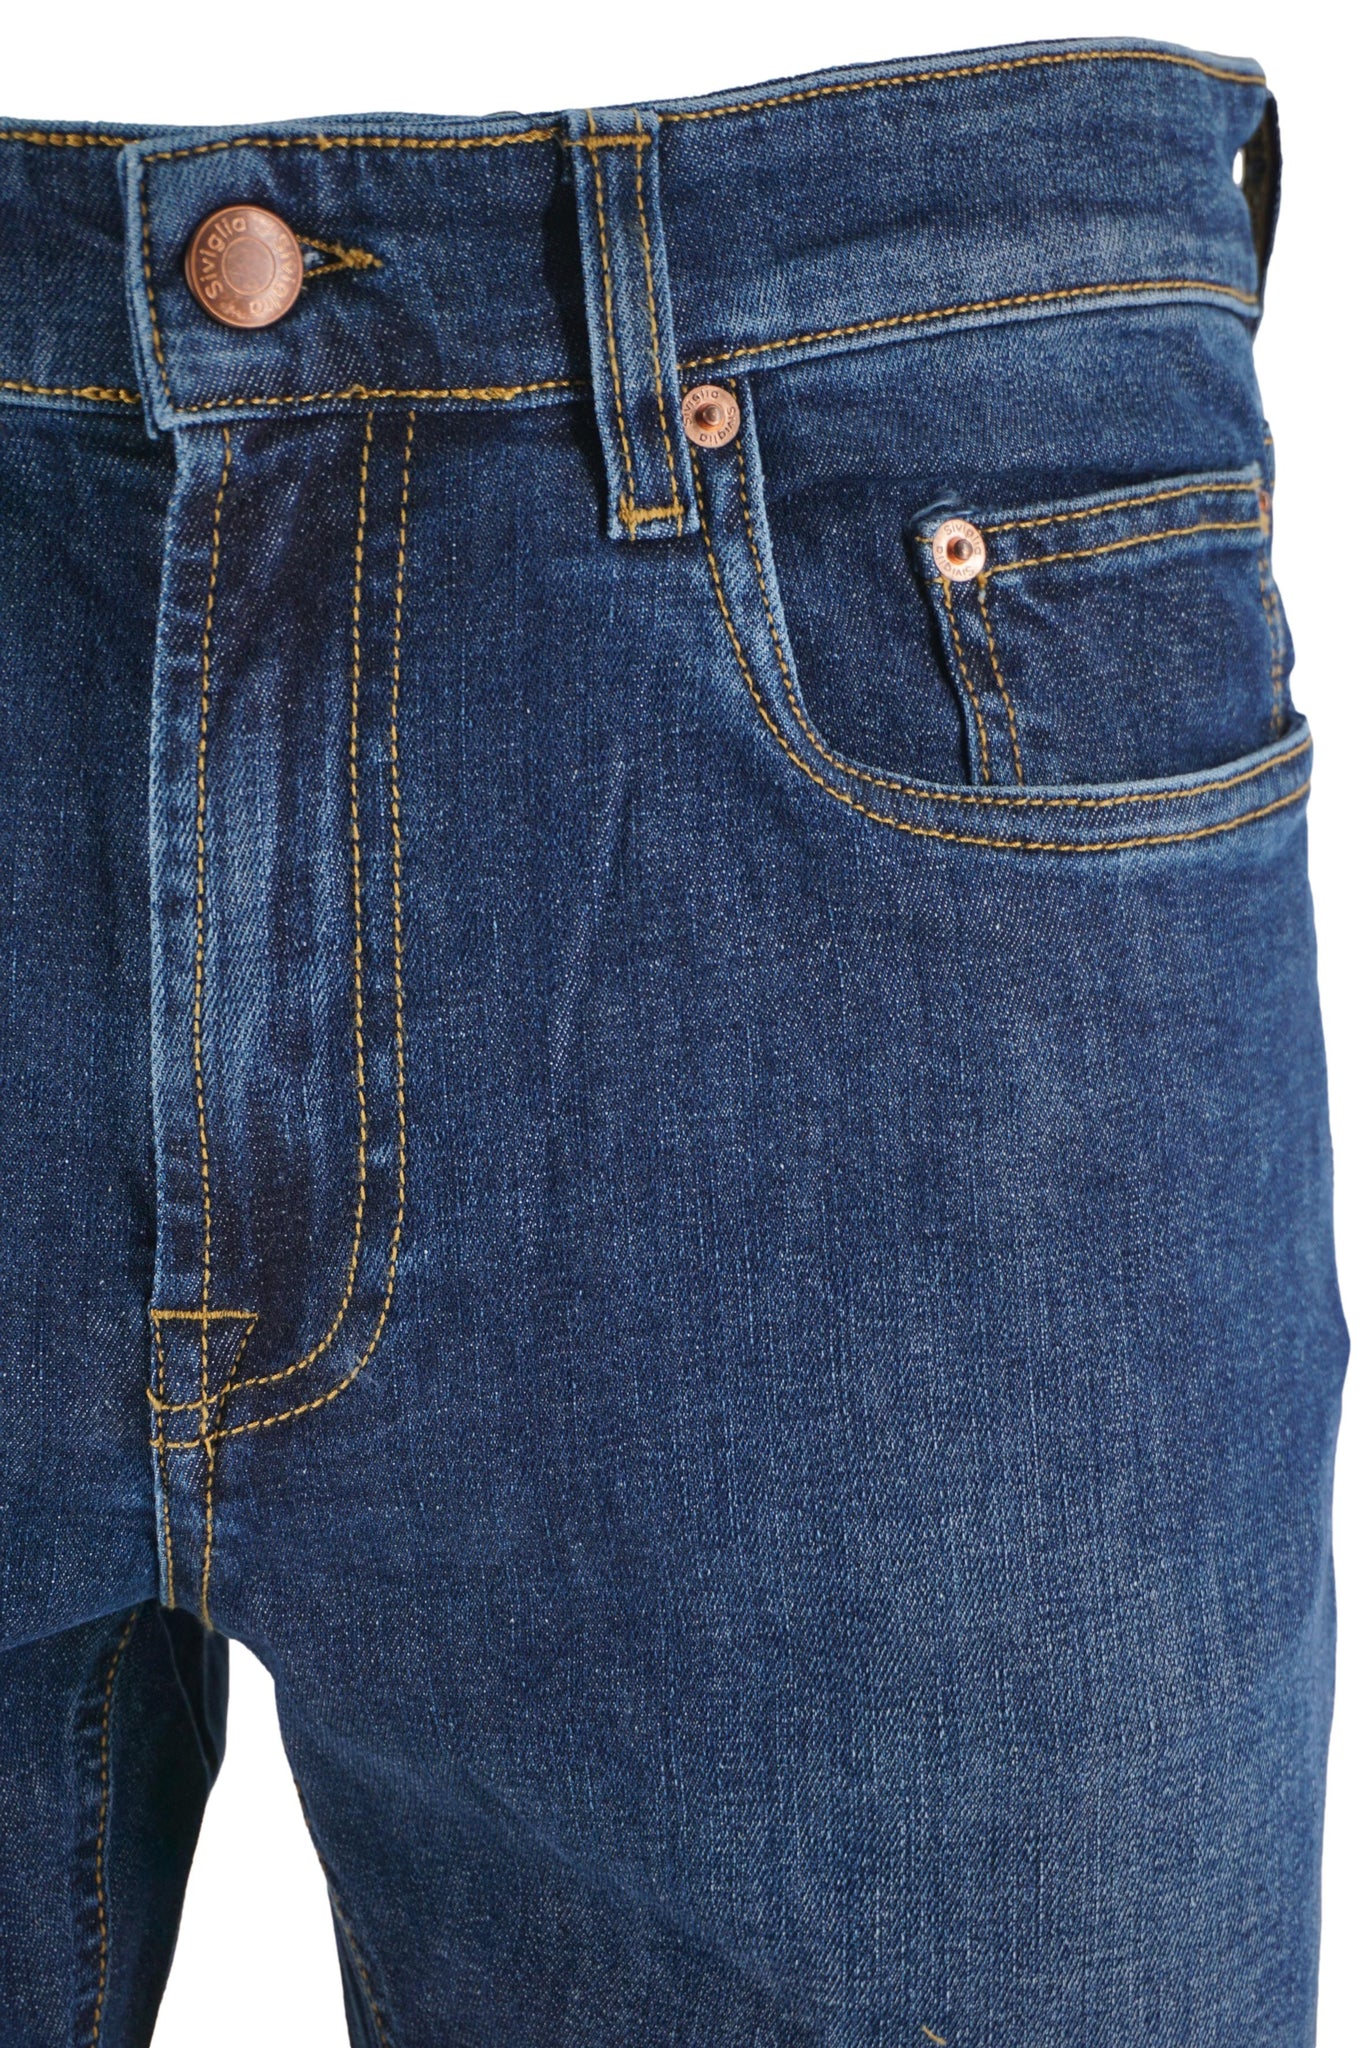 Jeans Cinque Tasche Modello Palazzo / Jeans - Ideal Moda